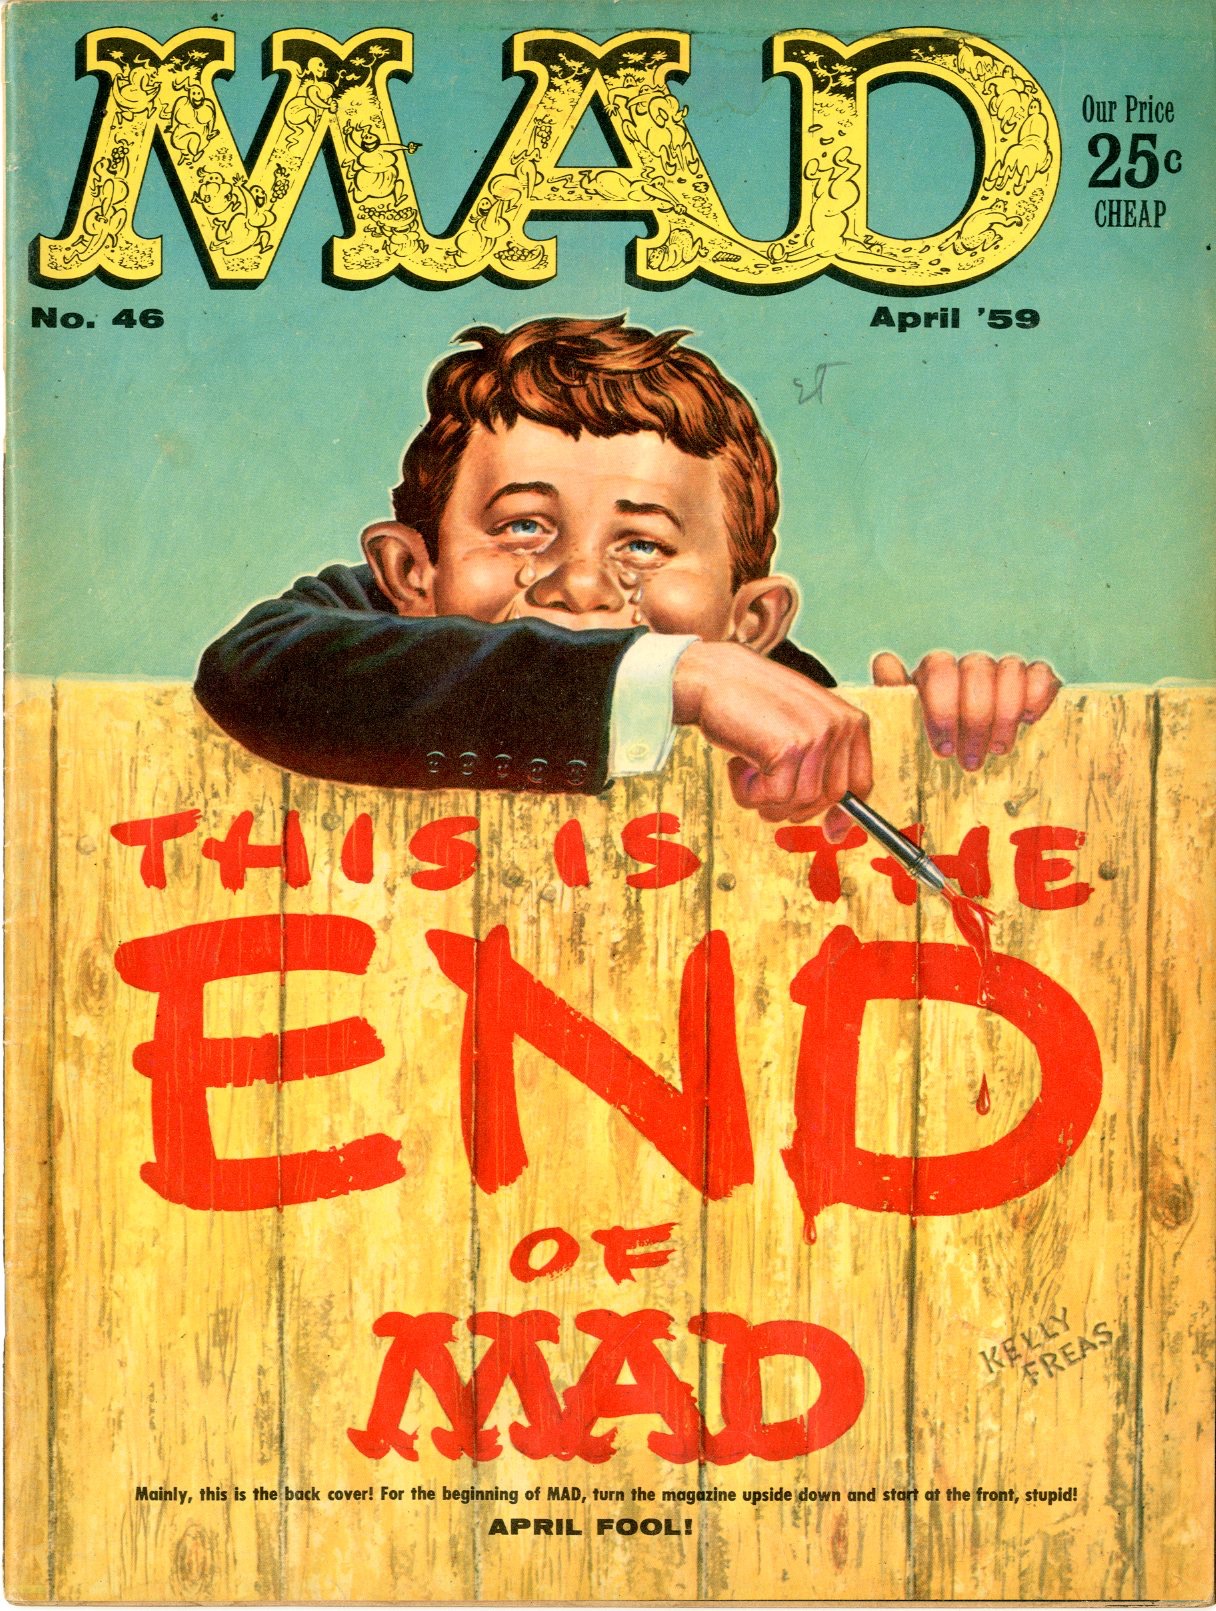 Плакат обложка. Журнал Mad. Mad журнал обложка. Американский журнал Мэд. Frantics обложка.